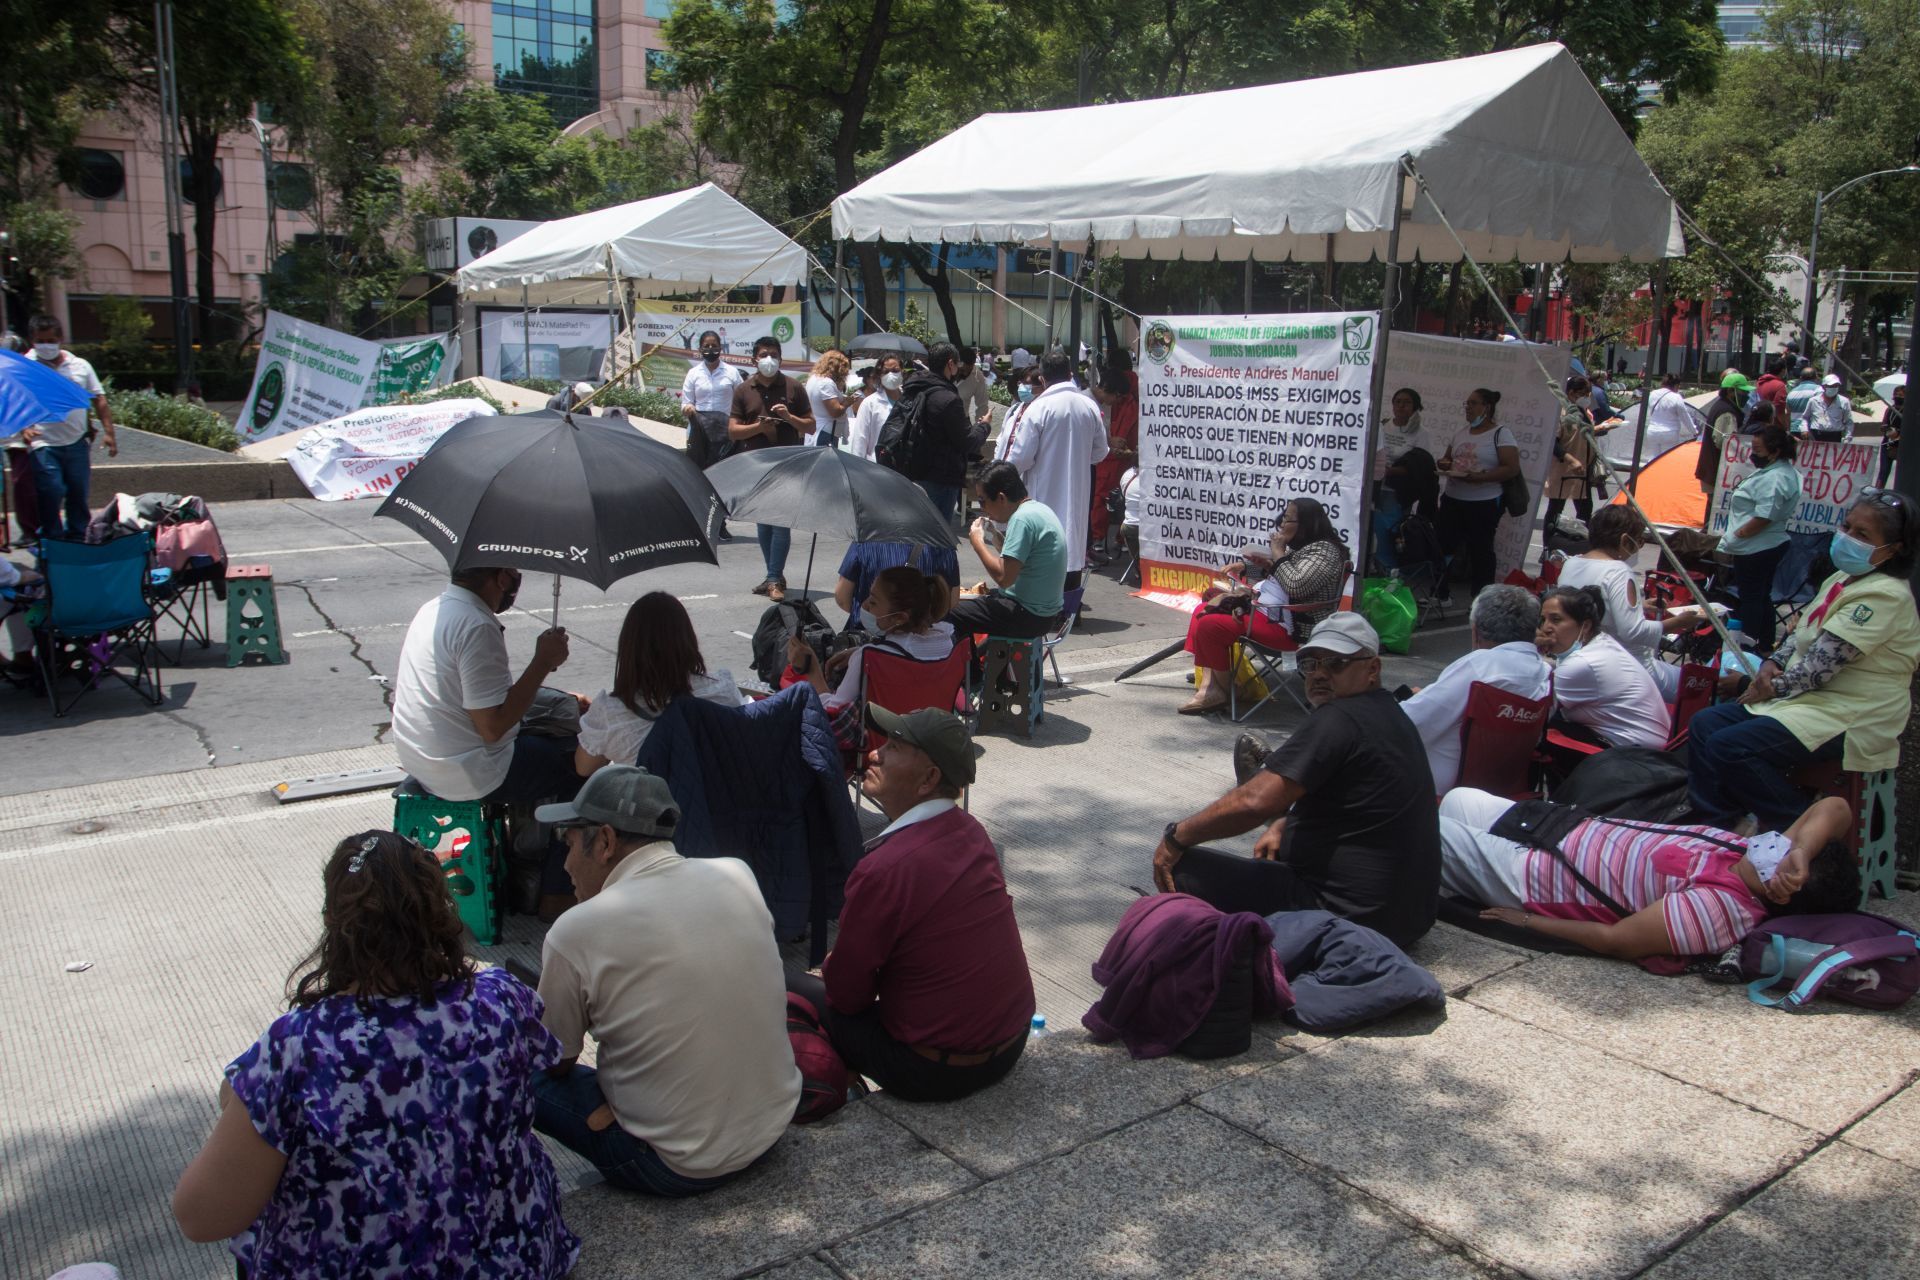 Jubilados del IMSS mantienen un bloque sobre avenida Reforma para exigir que se les regrese el dinero de sus ahorros de más de 27 años, el cual esta depositado en su afore pero no está reflejado